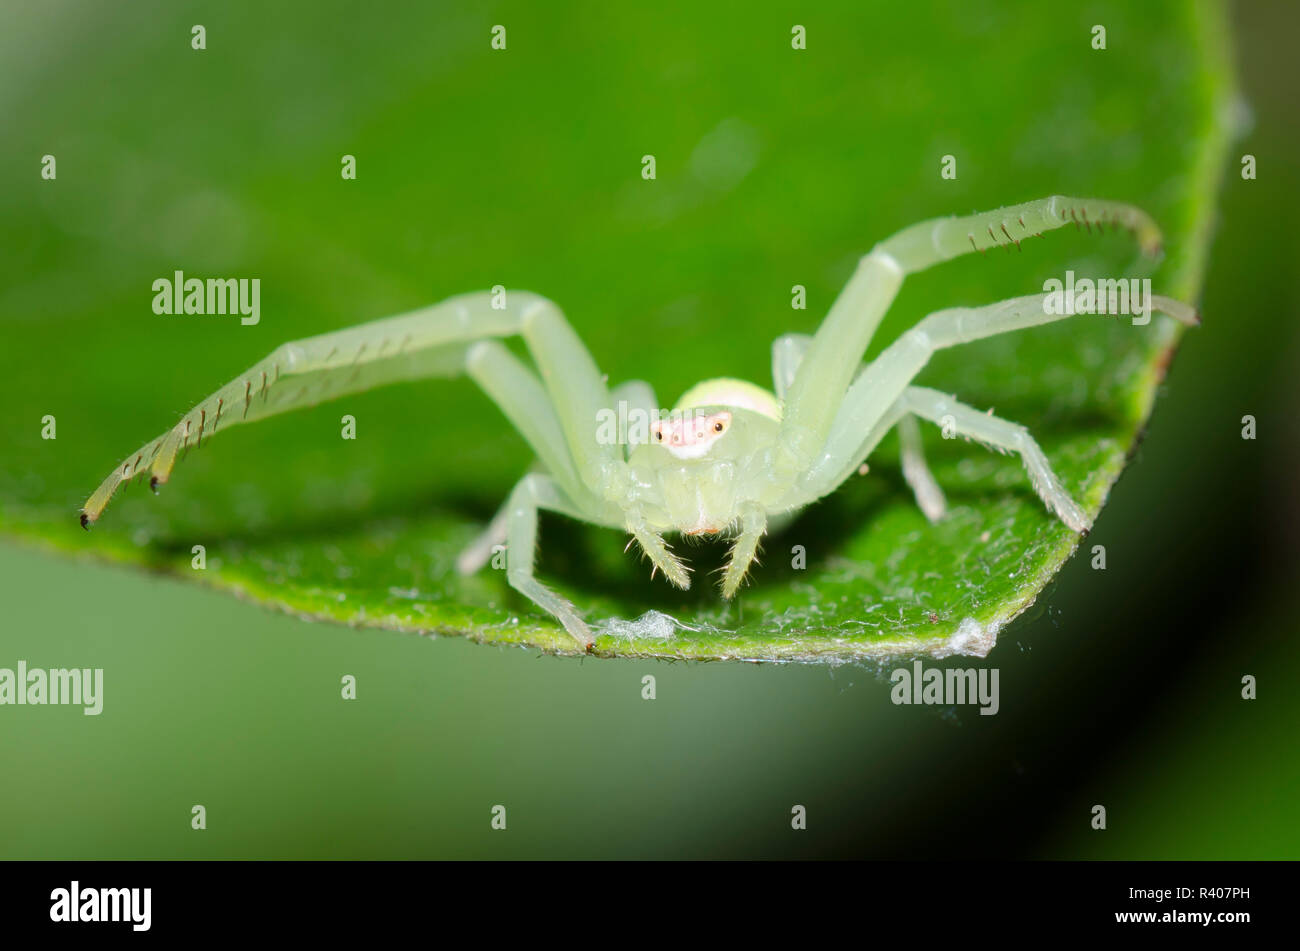 Crab Spider, Misumessus lappi Stock Photo